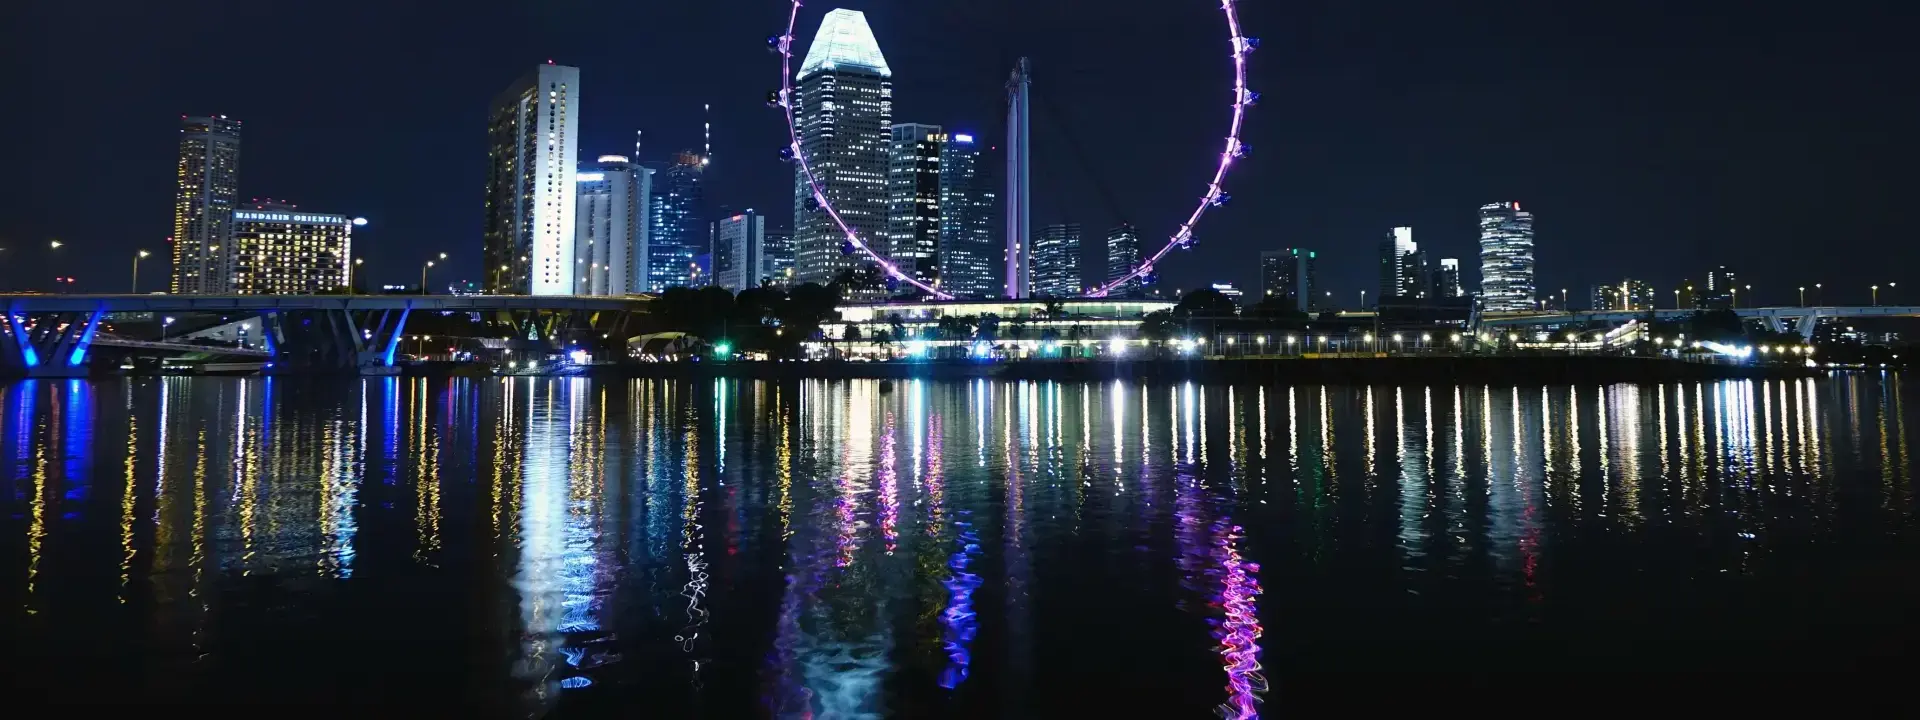 Jurong East Singapore